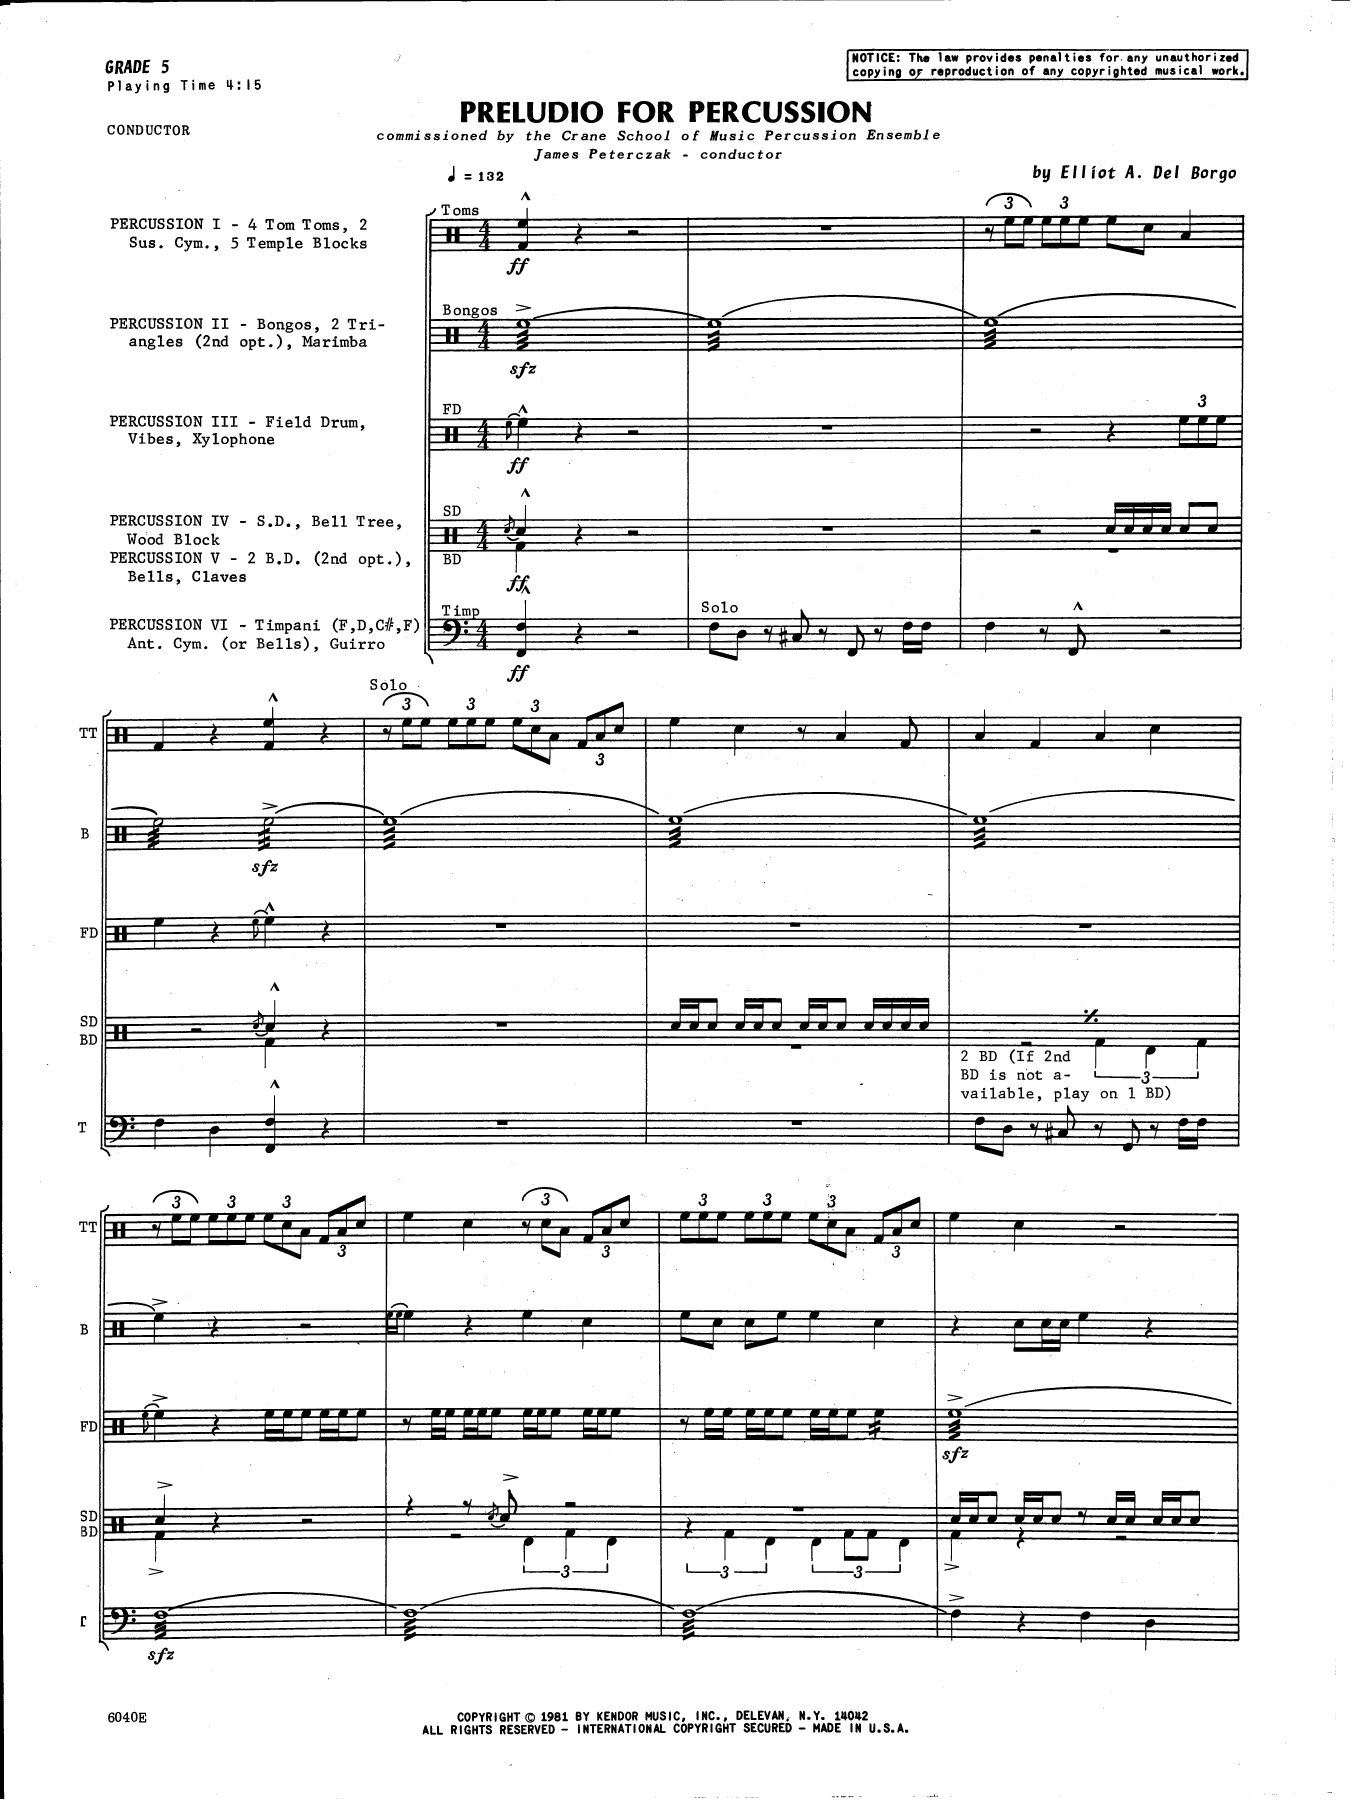 Preludio For Percussion - Full Score (Percussion Ensemble) von Elliot A. Del Borgo